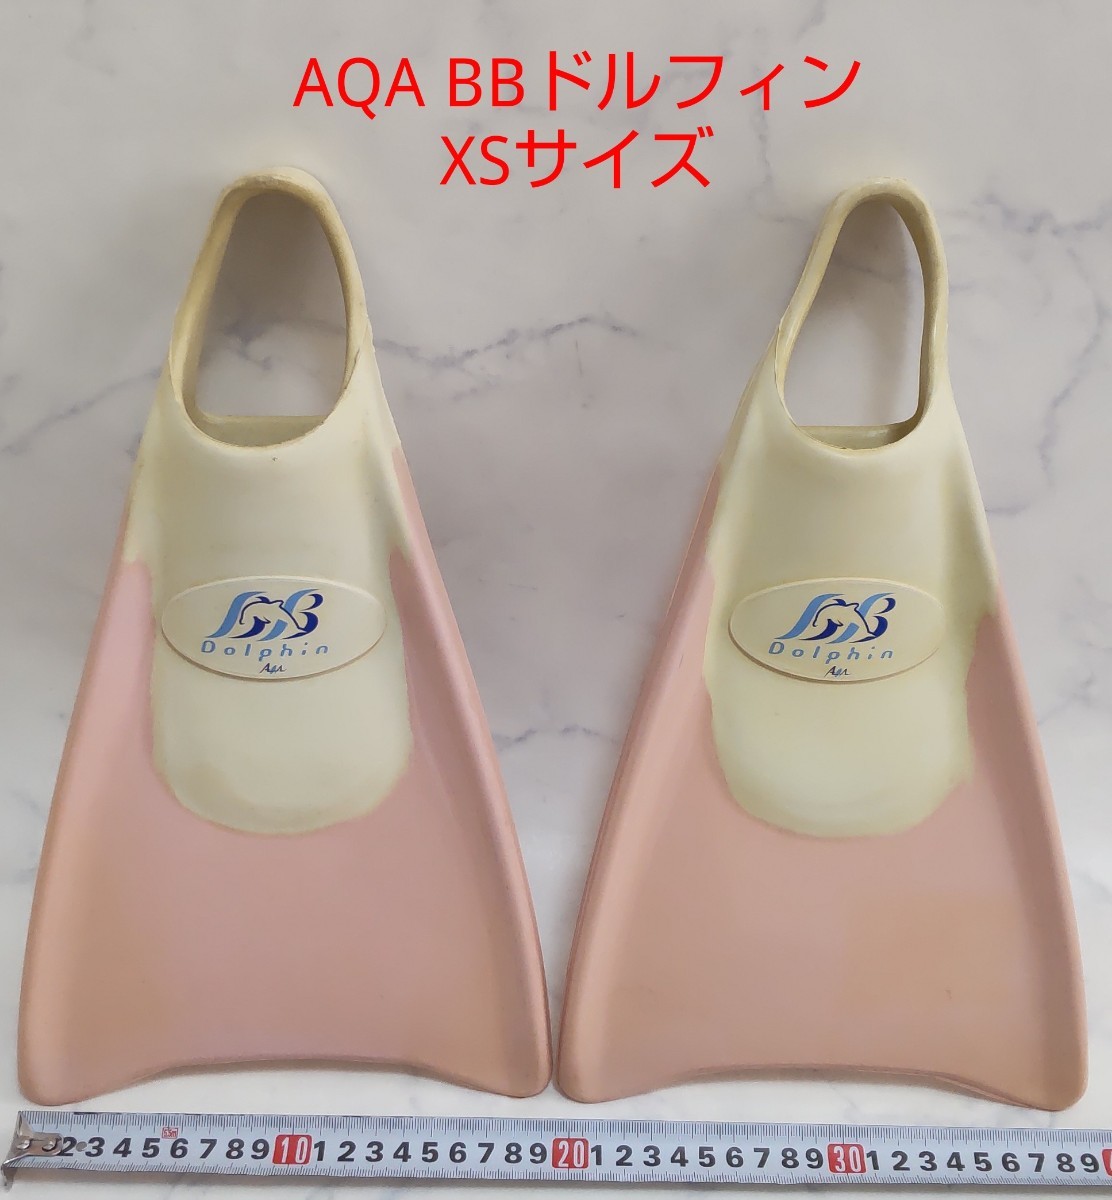 AQA BBドルフィン サイズ：XS ボディボード アクア フィン ピンク